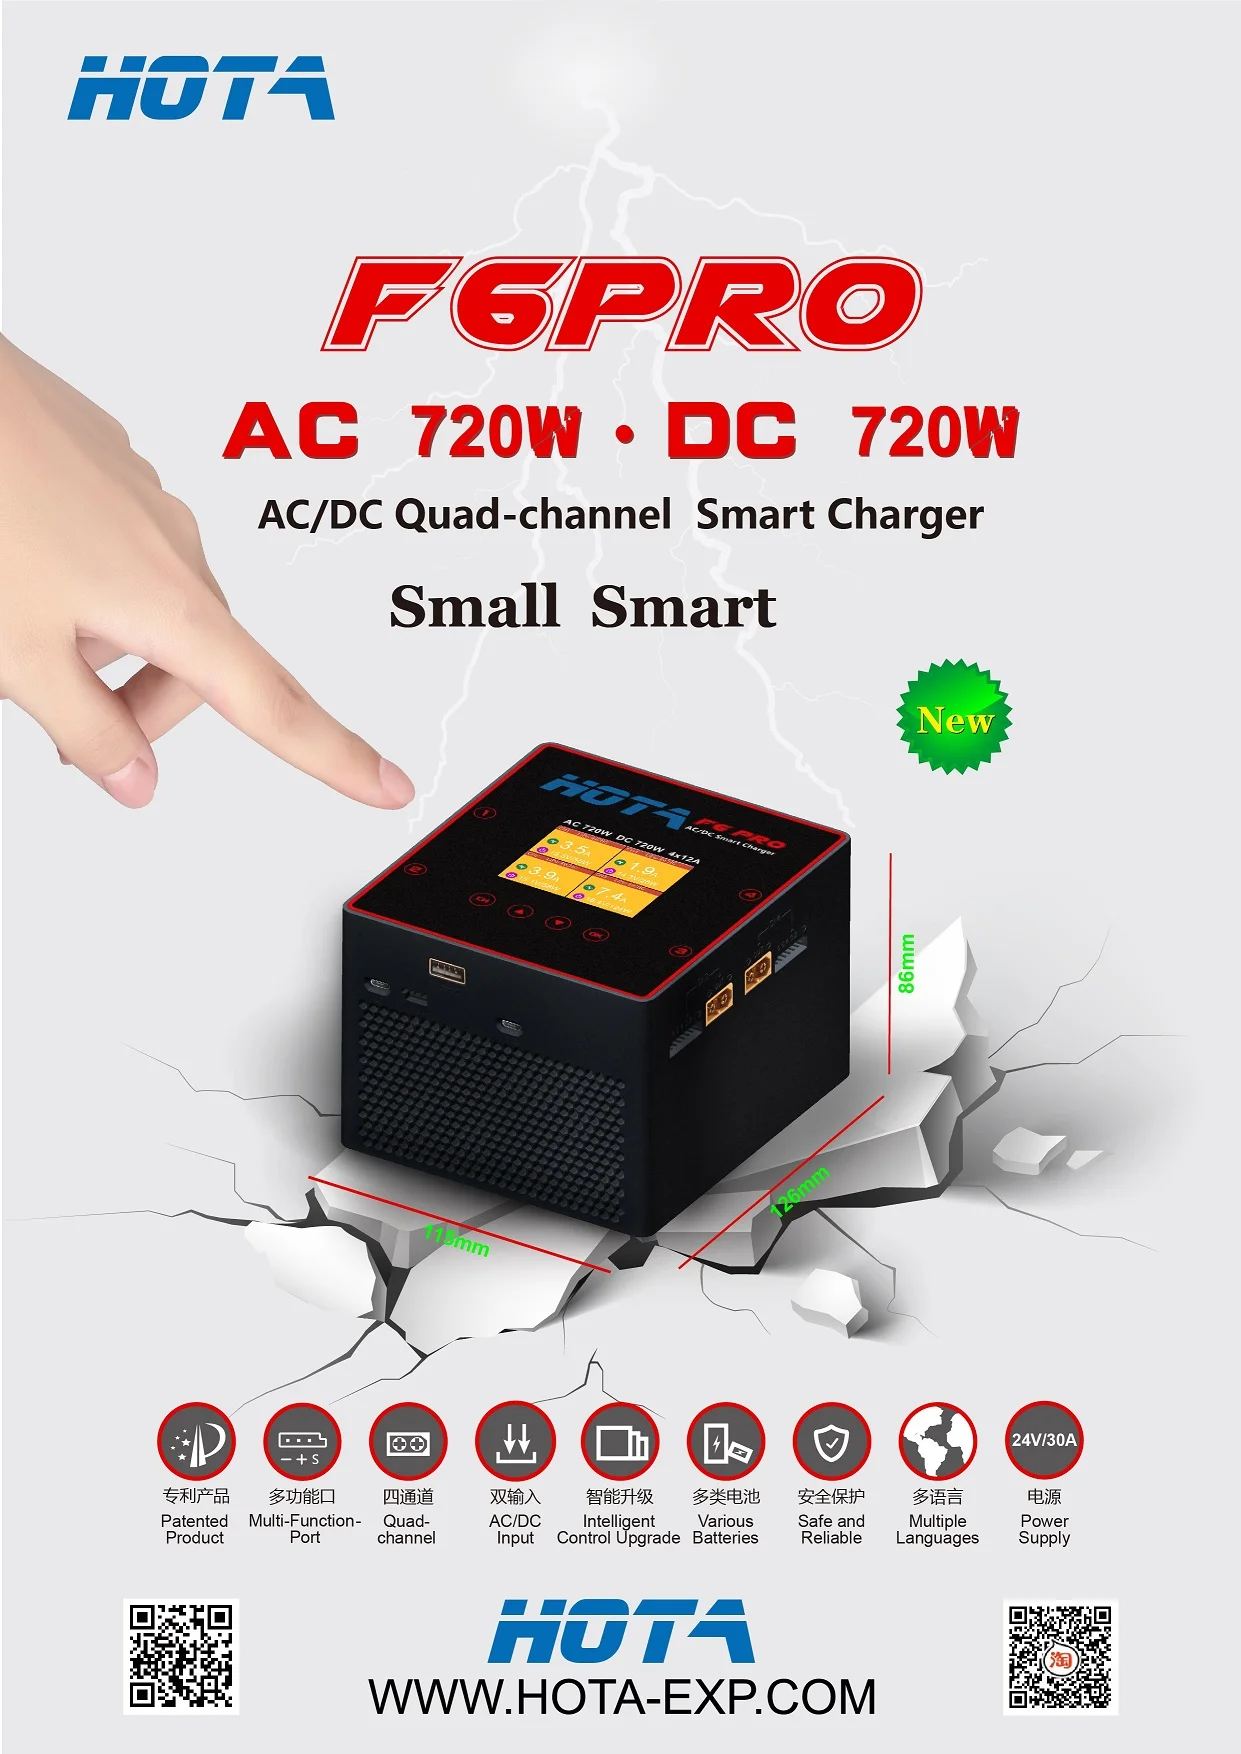 hota f6 pro quad channel ac720w dc720w 1 6s smart charger ac dc charger description mantisfpv australia